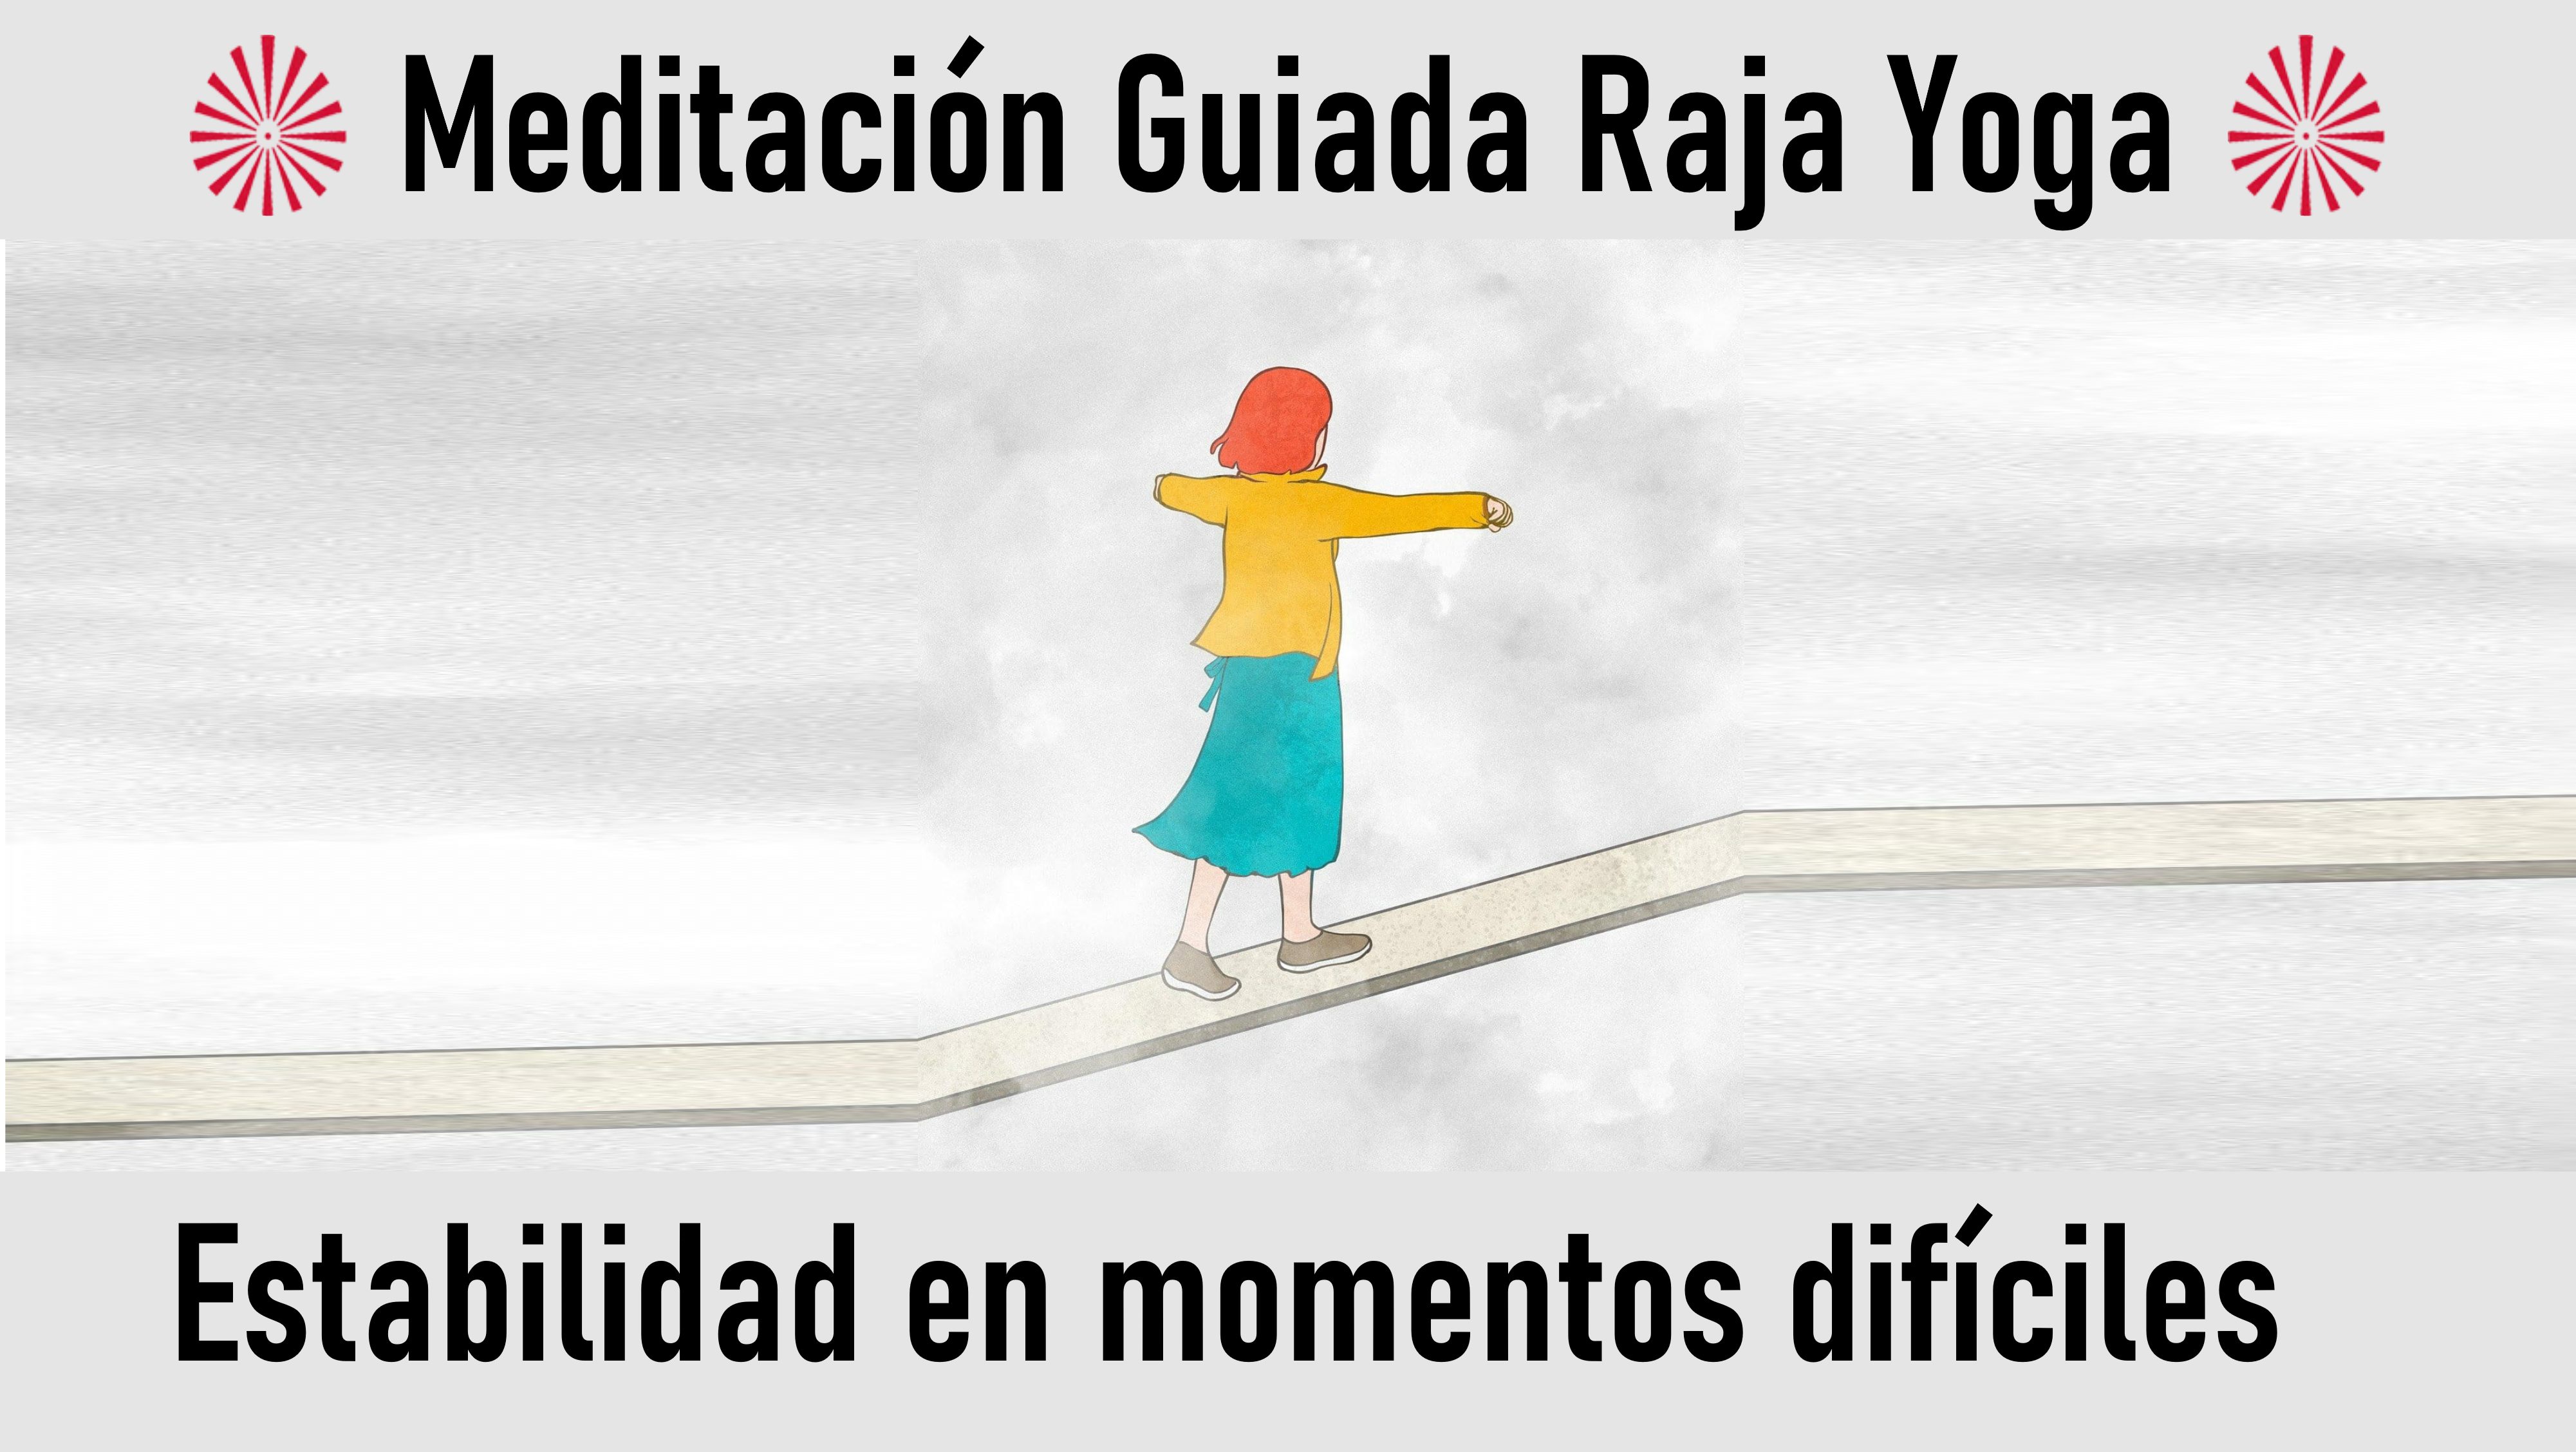 Meditación Raja Yoga: Estabilidad en momentos difíciles (13 Julio 2020) On-line desde Madrid